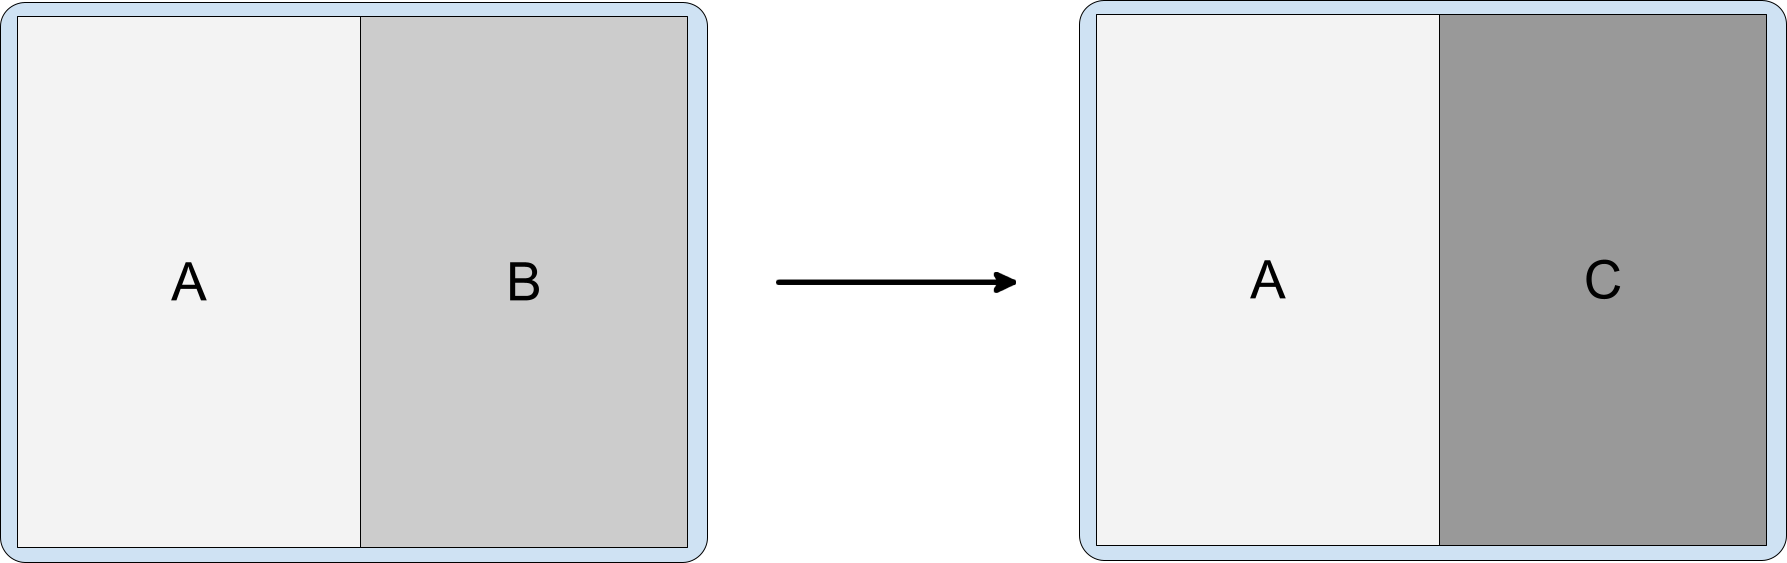 Phần tách hoạt động có chứa các hoạt động A, B và C, trong đó C nằm phía trên B.